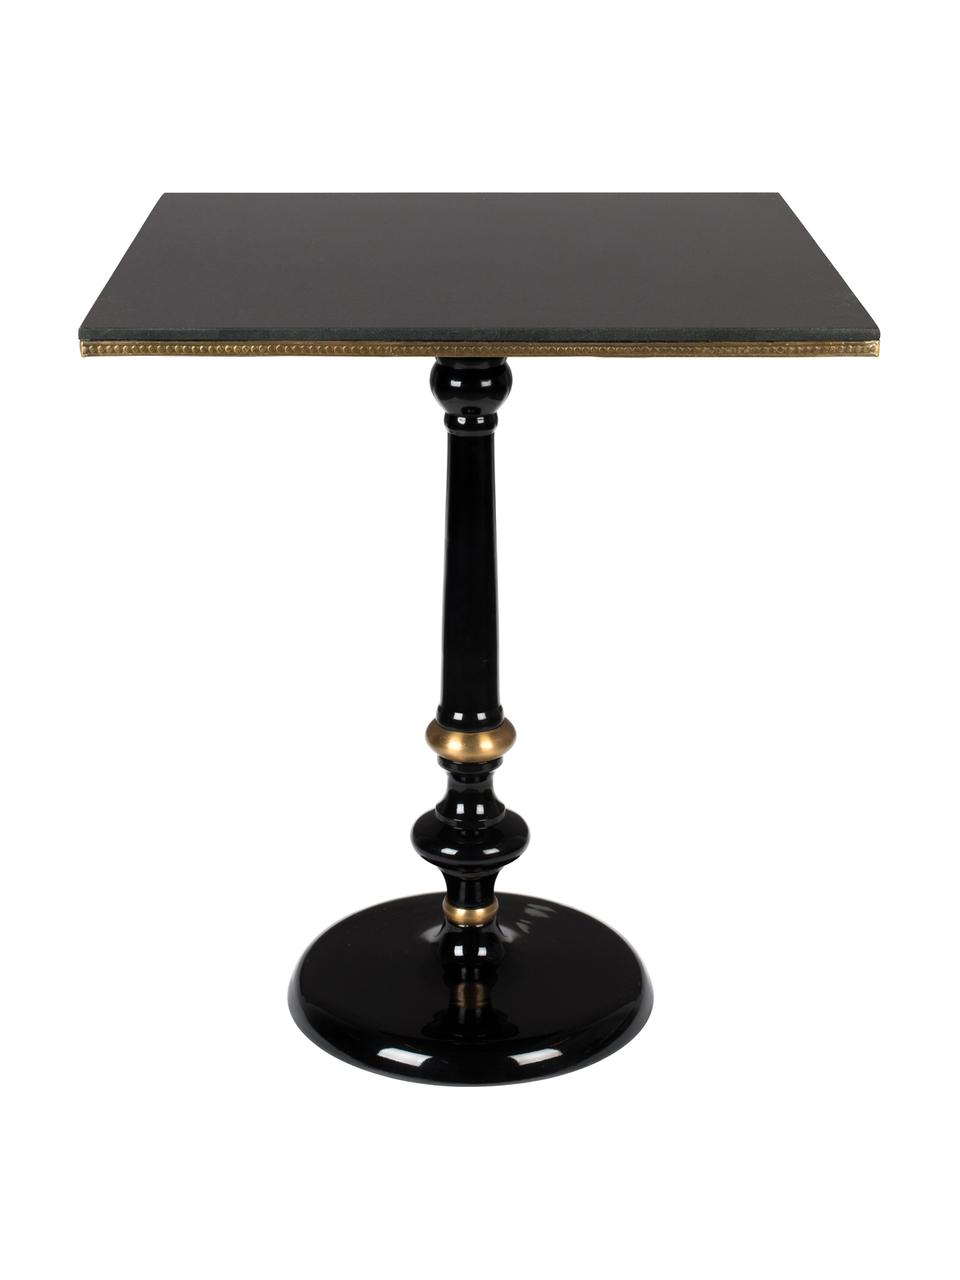 KleinerEsstisch Own The Glow mit Granitstein-Tischplatte, Tischplatte: Granitstein, Schwarz, 65 x 76 cm